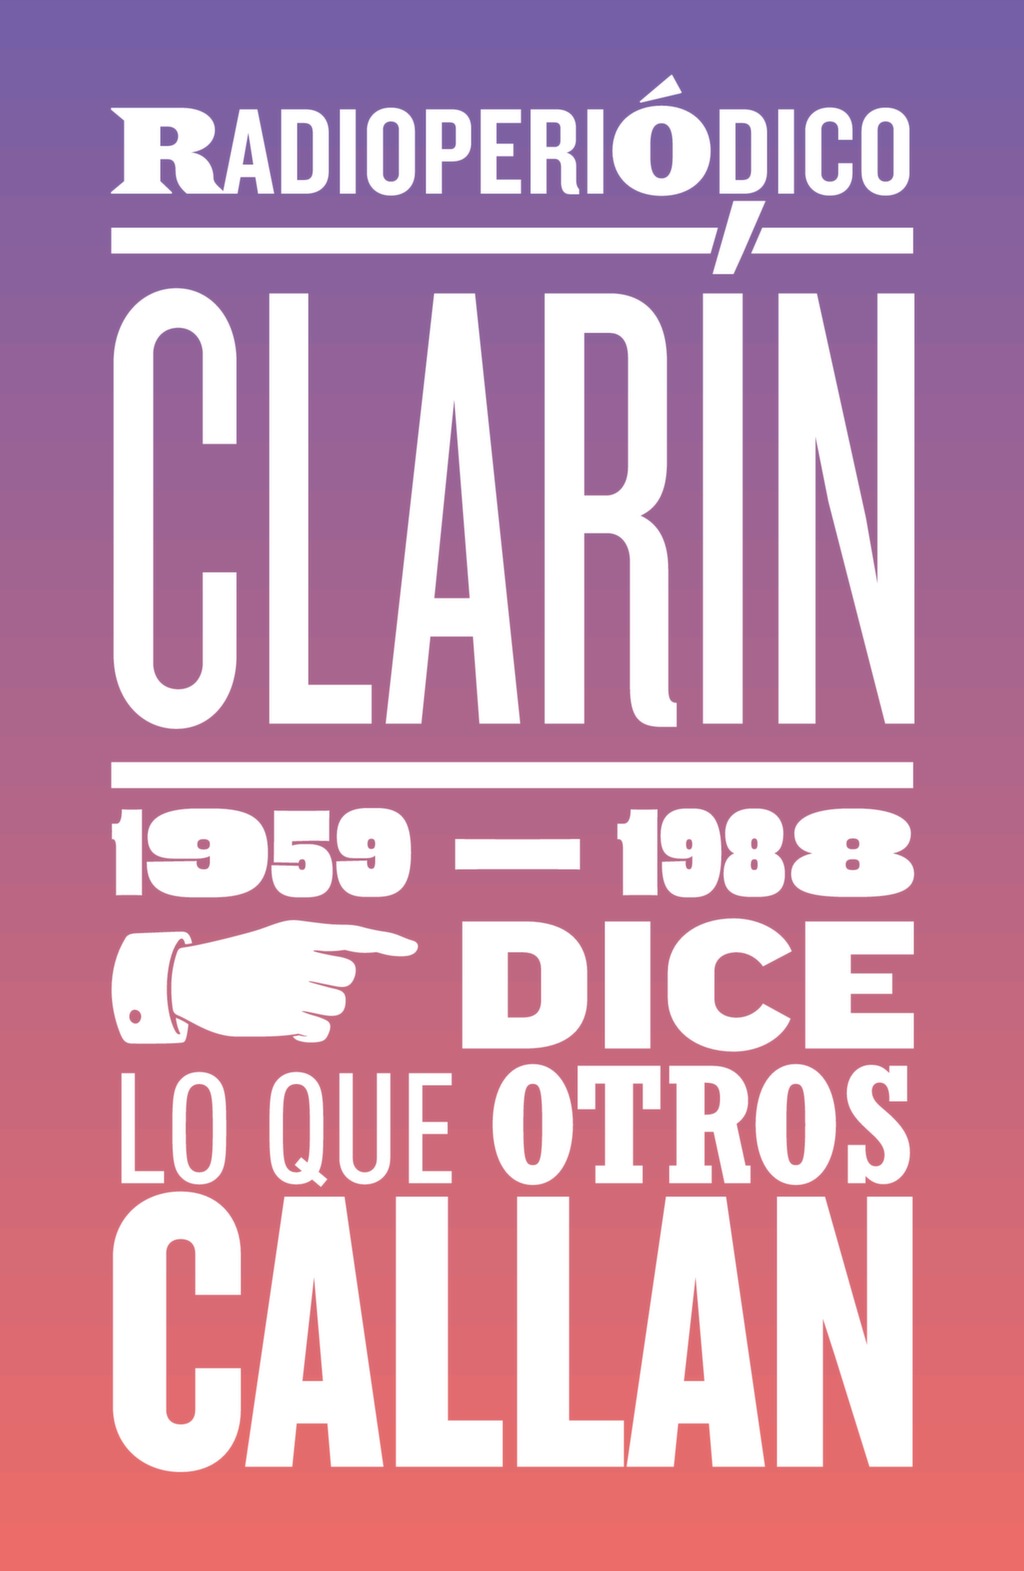 Cuadernillo Radioperiódico Clarín